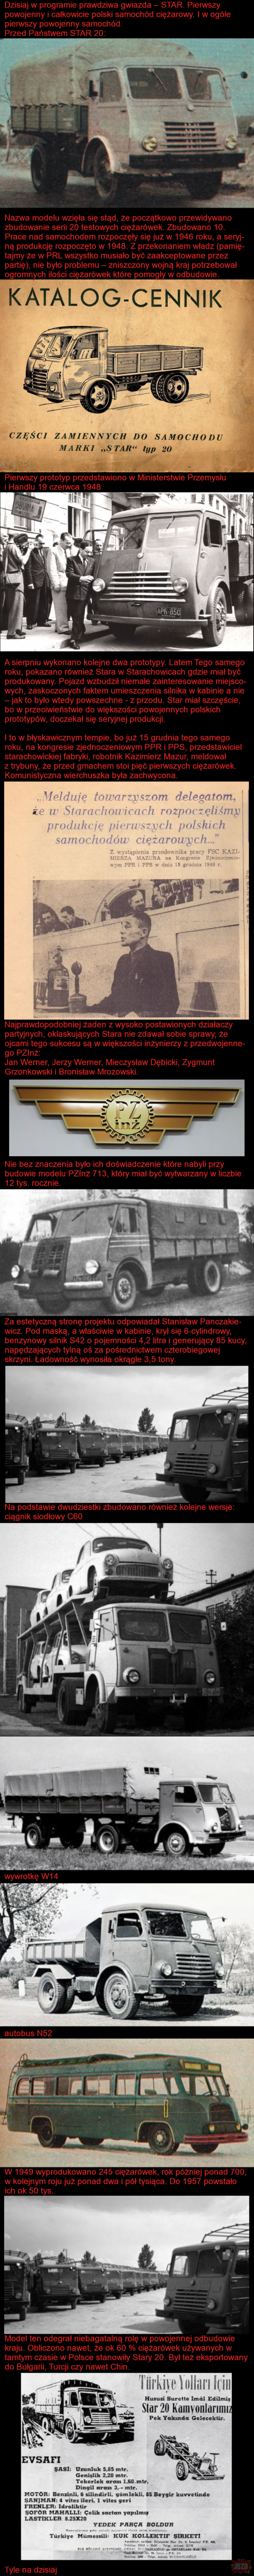 Star 20 - początek powojennej polskiej motoryzacji